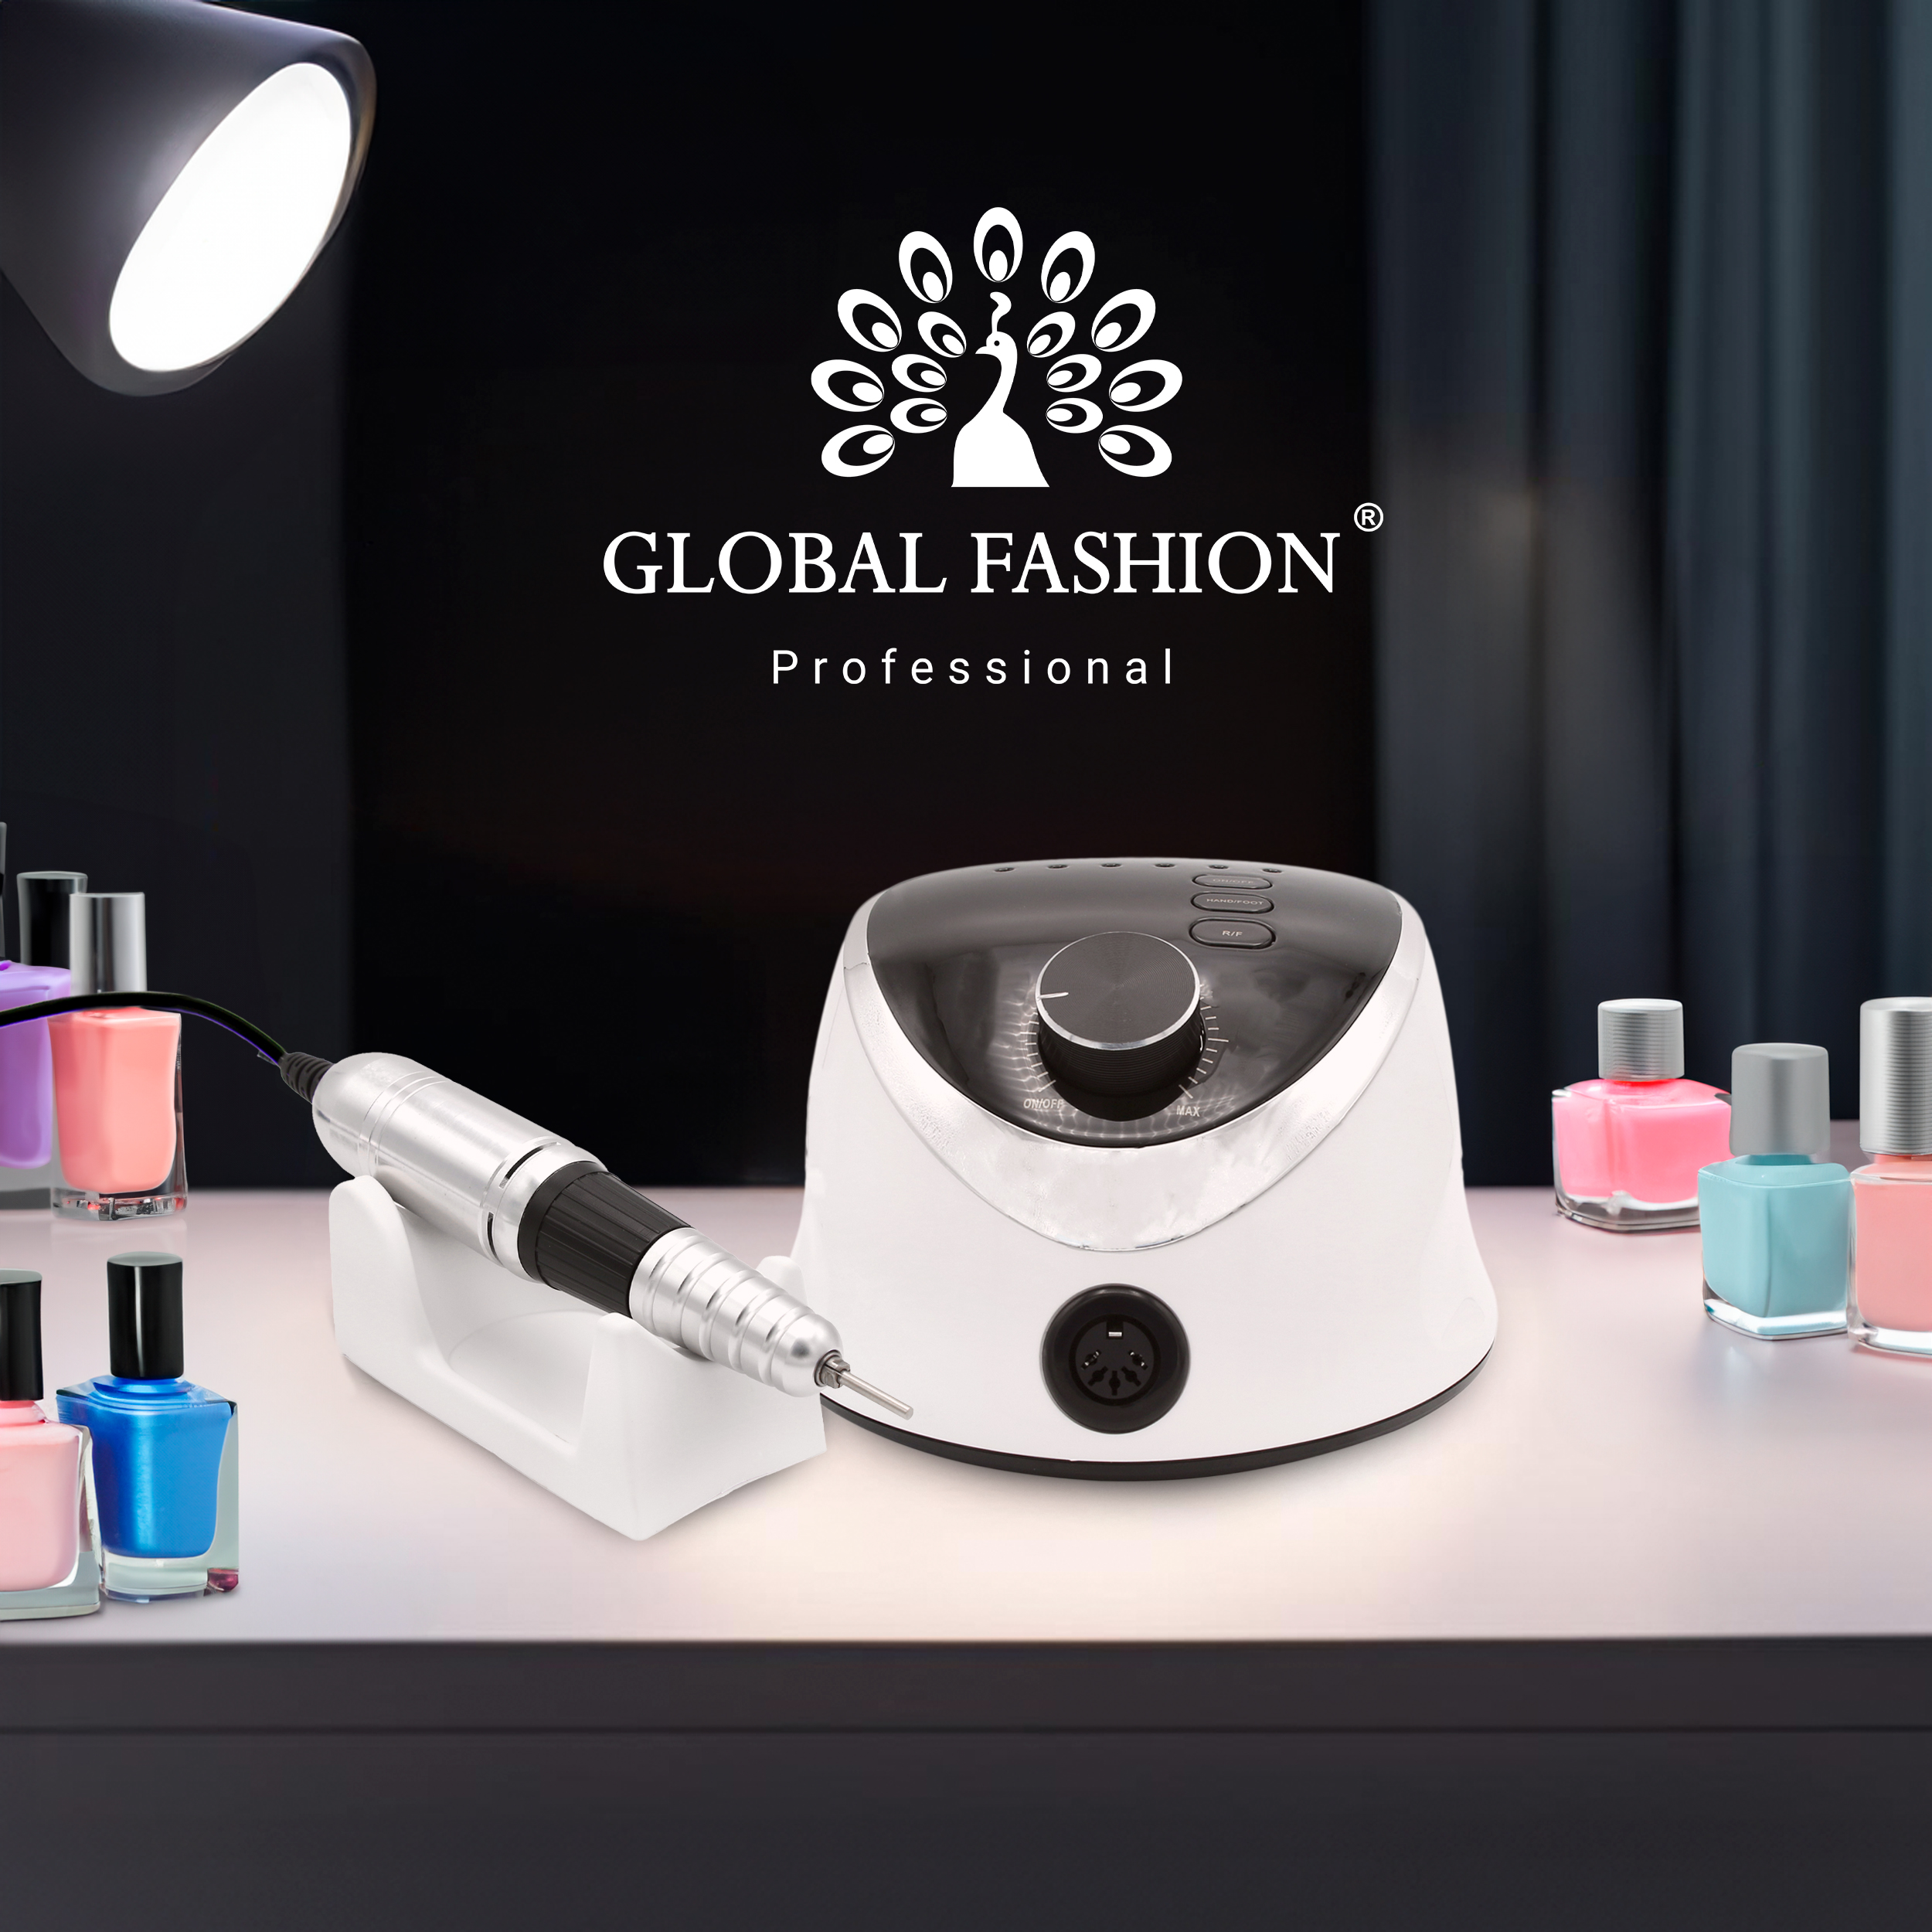 Професійний апарат для манікюру і педикюру M12 Global Fashion 68Вт 35000 об/хв - топовий продукт від Global Fashion